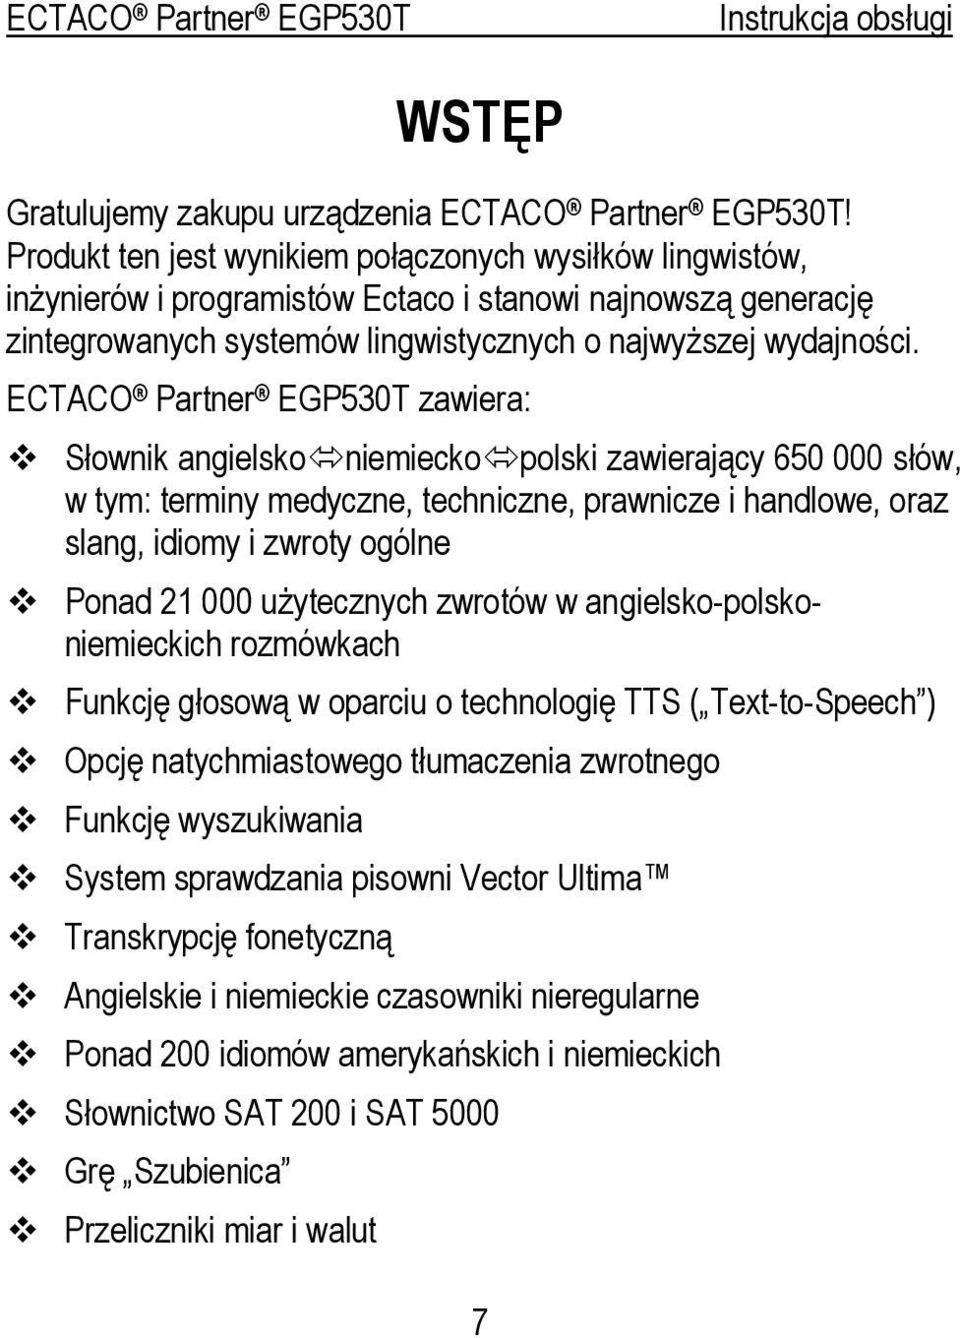 ECTACO Partner EGP530T zawiera: Słownik angielsko niemiecko polski zawierający 650 000 słów, w tym: terminy medyczne, techniczne, prawnicze i handlowe, oraz slang, idiomy i zwroty ogólne Ponad 21 000